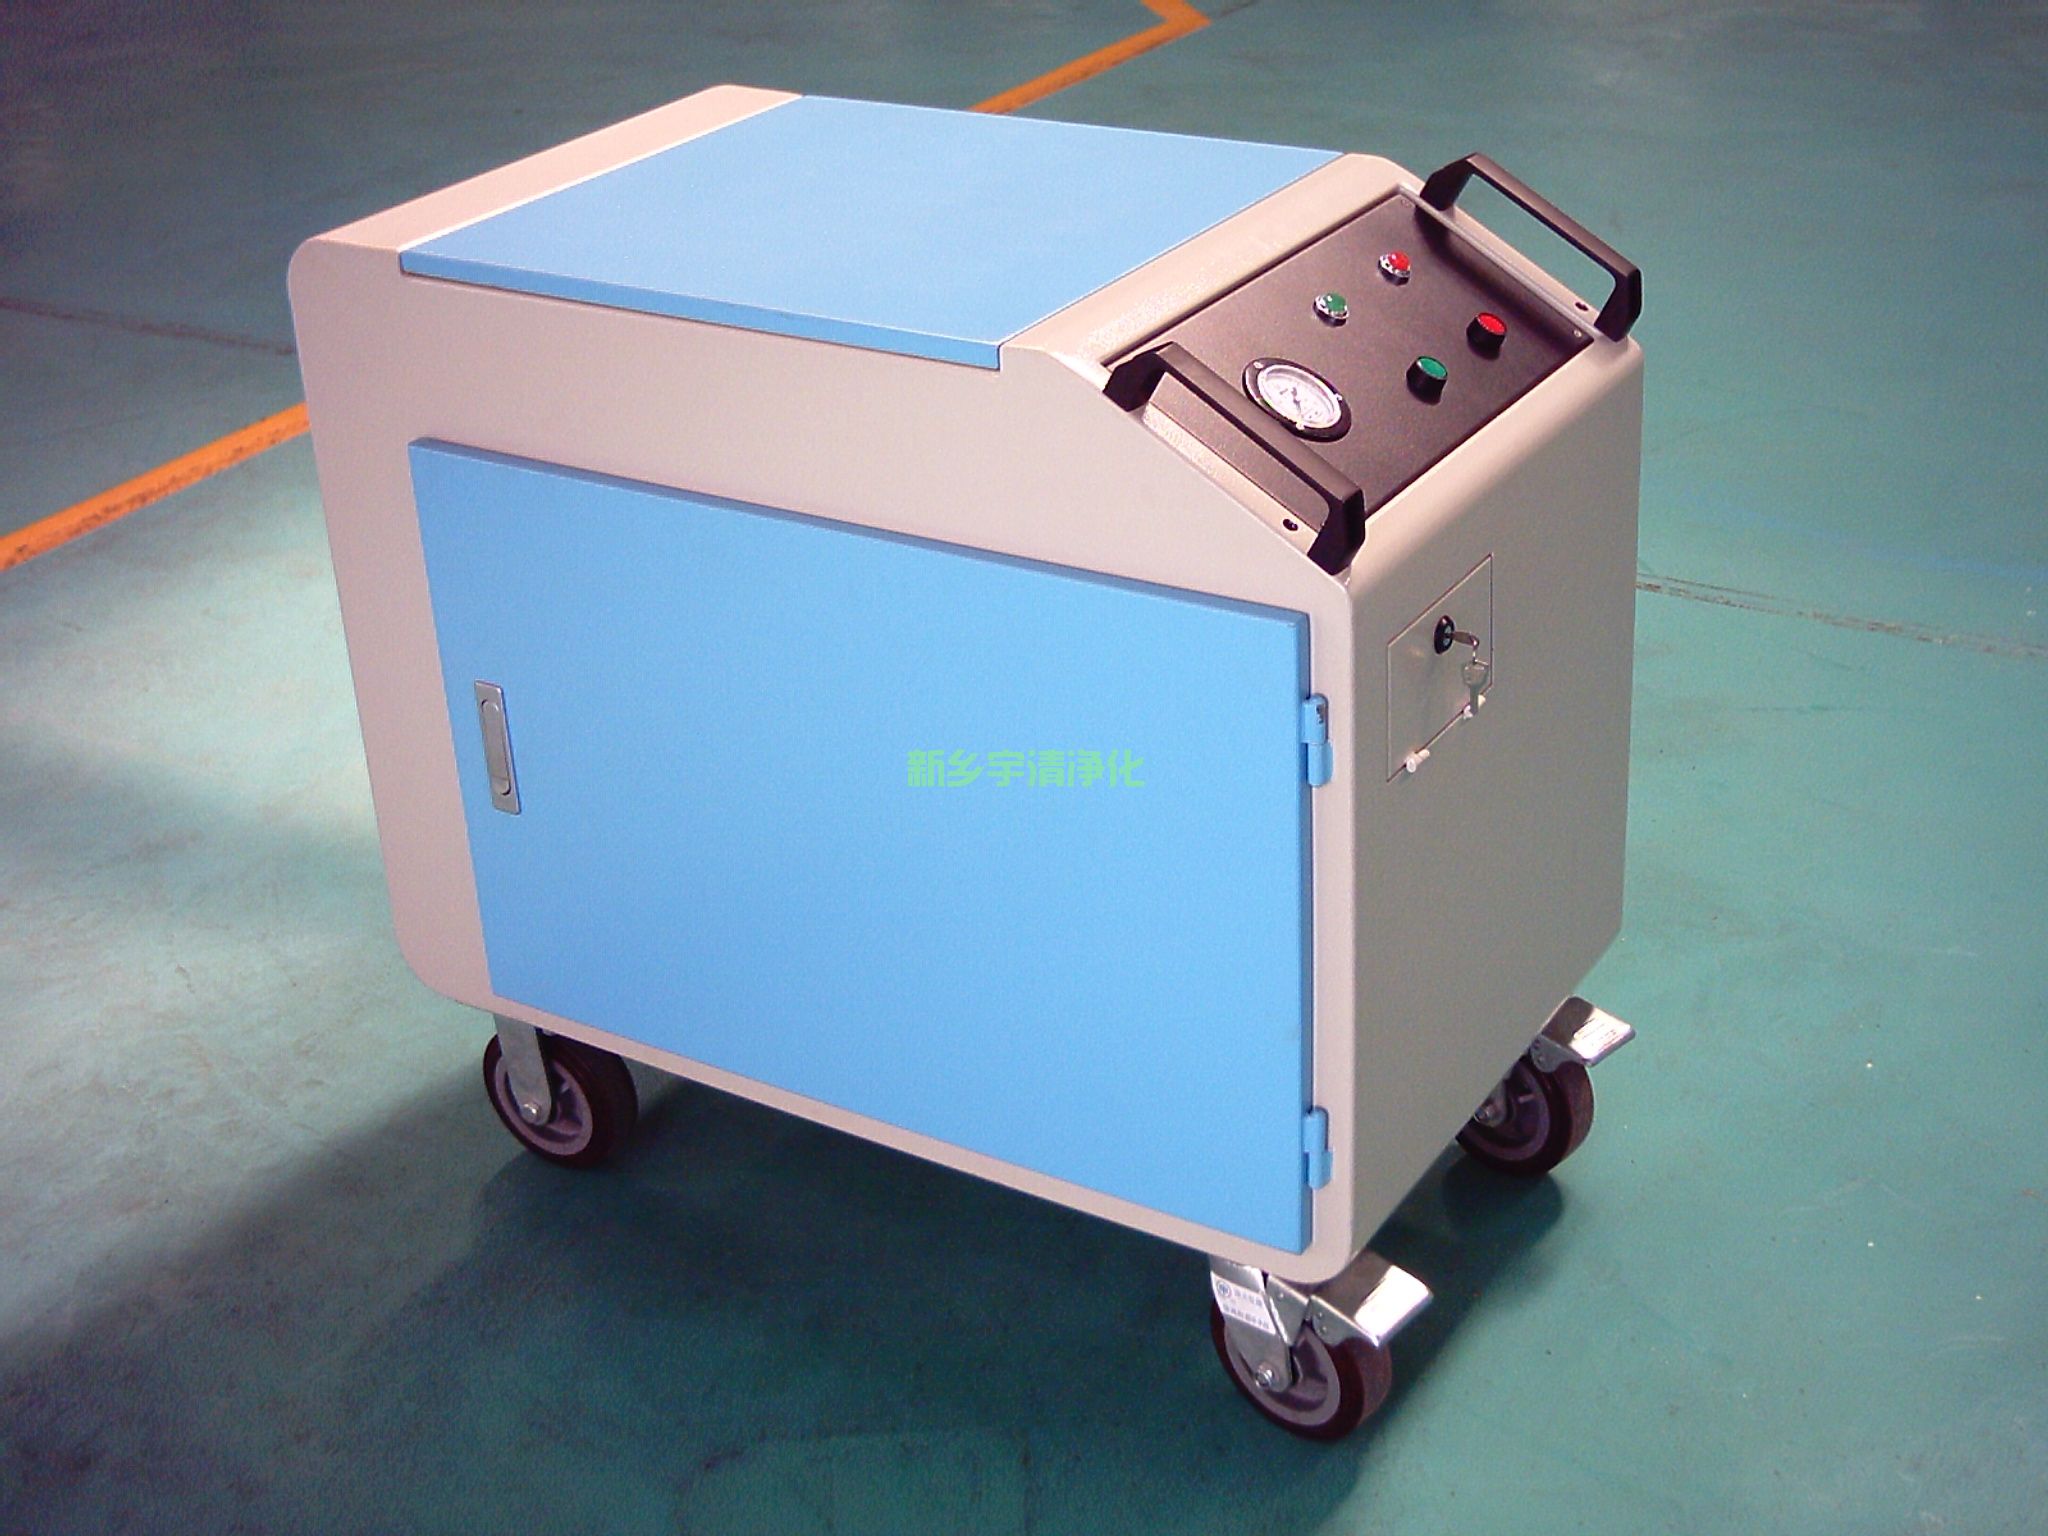 YQFLYJ-63C防爆箱式移动滤油机――防爆型滤油机